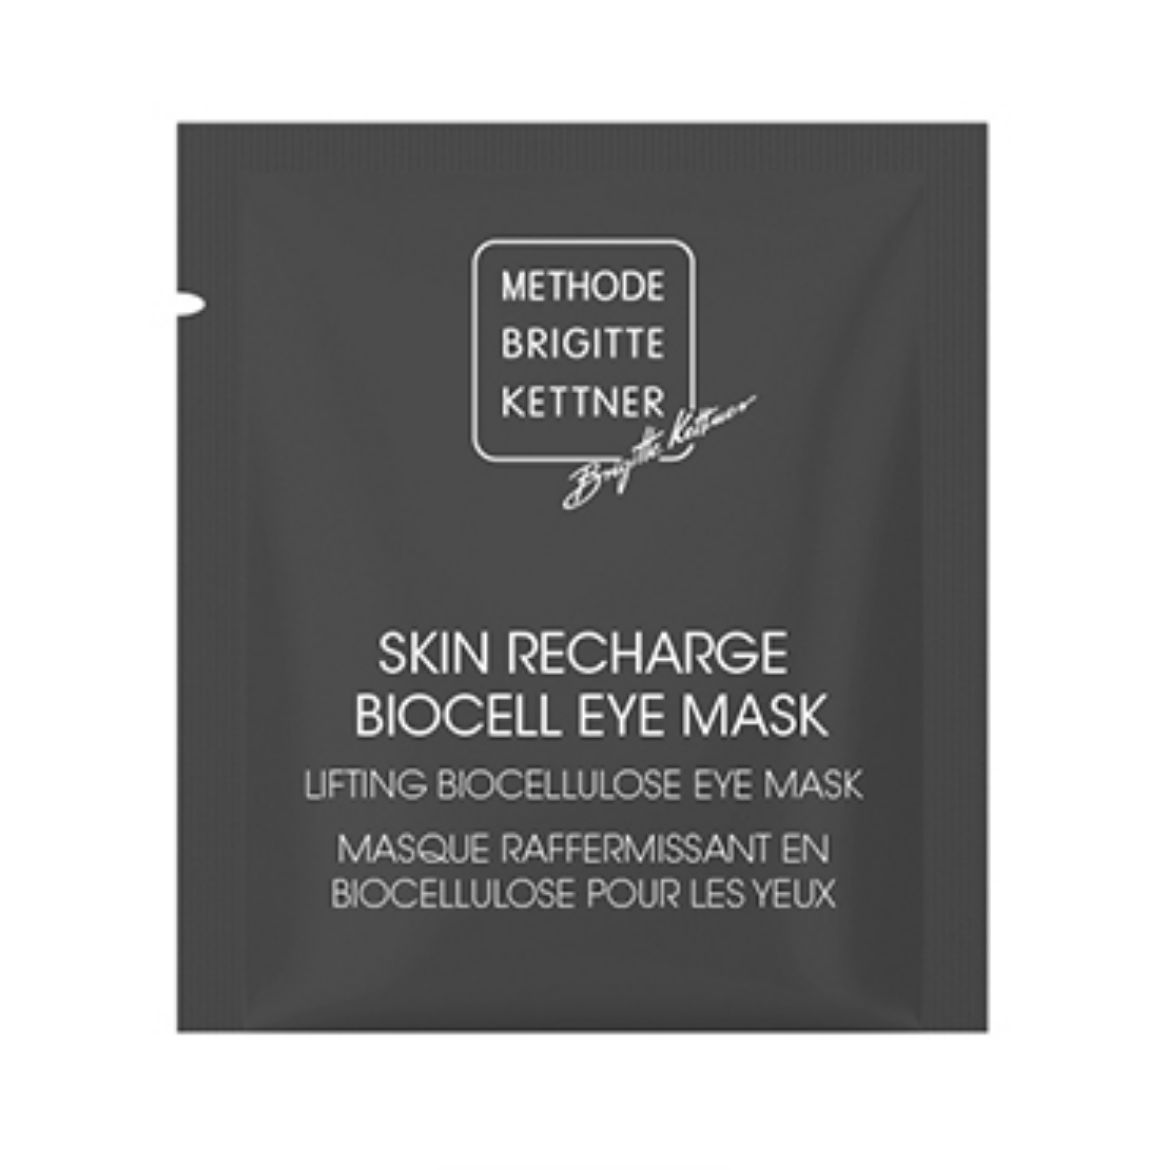 Bild von Methode Brigitte Kettner Skin Recharge Biocell Eye Mask (5 Stk.)